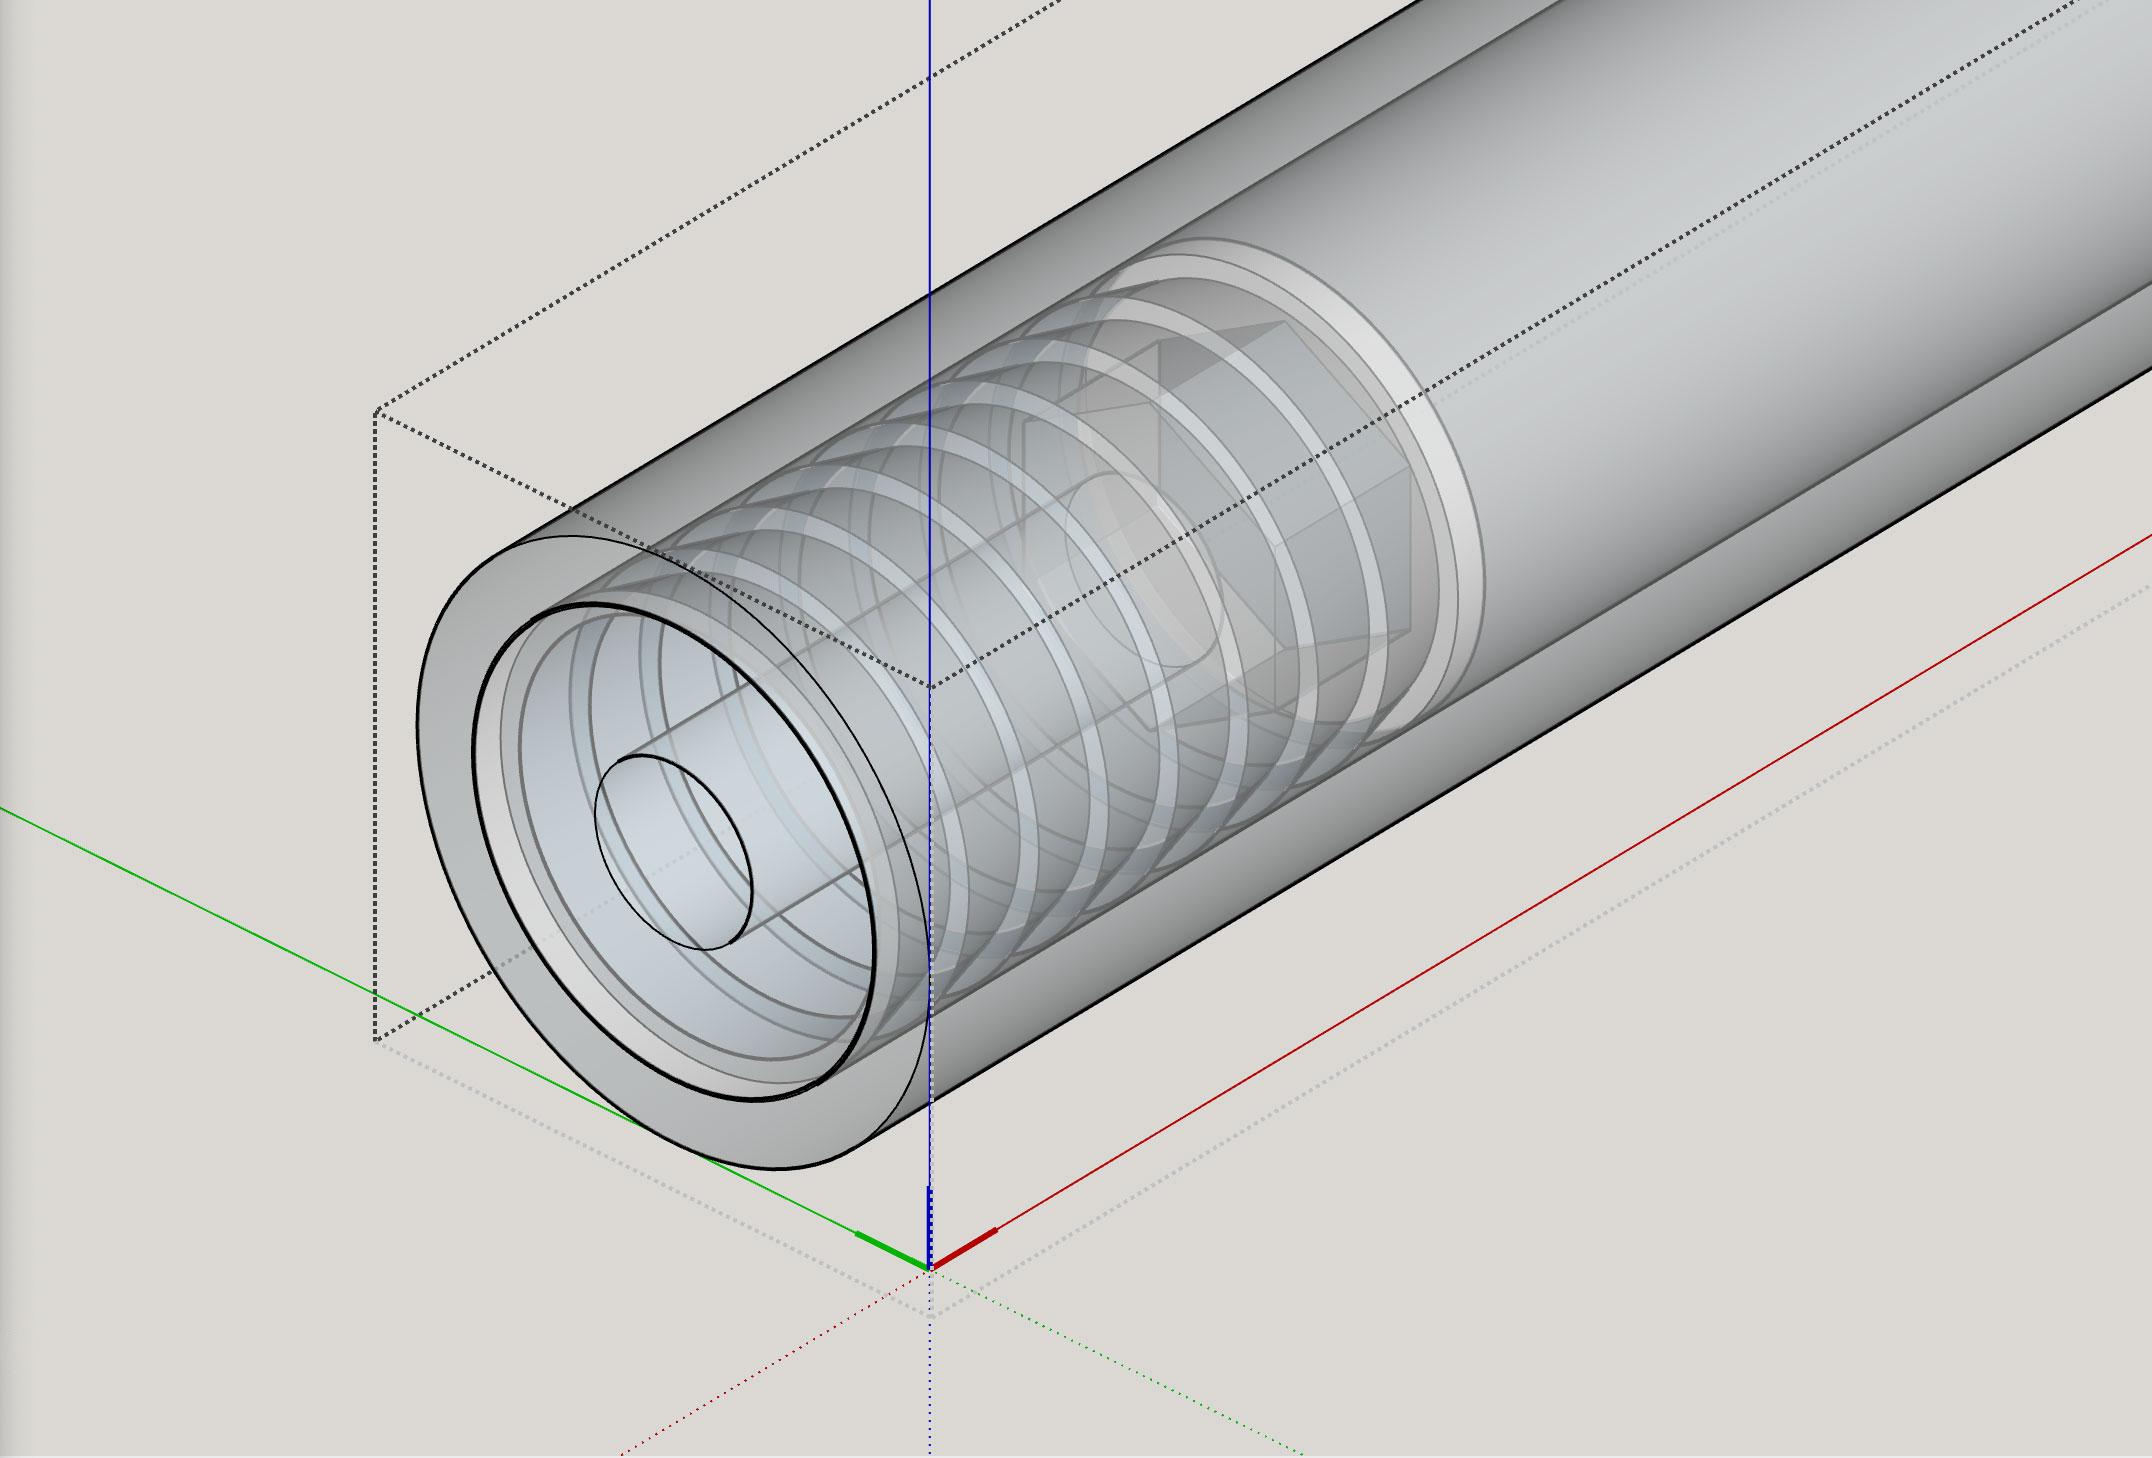 [DIY Panel Saw] Pipe Inner Endcap Nut/Bolt Holder (M8) for .75" ID pipe 3d model